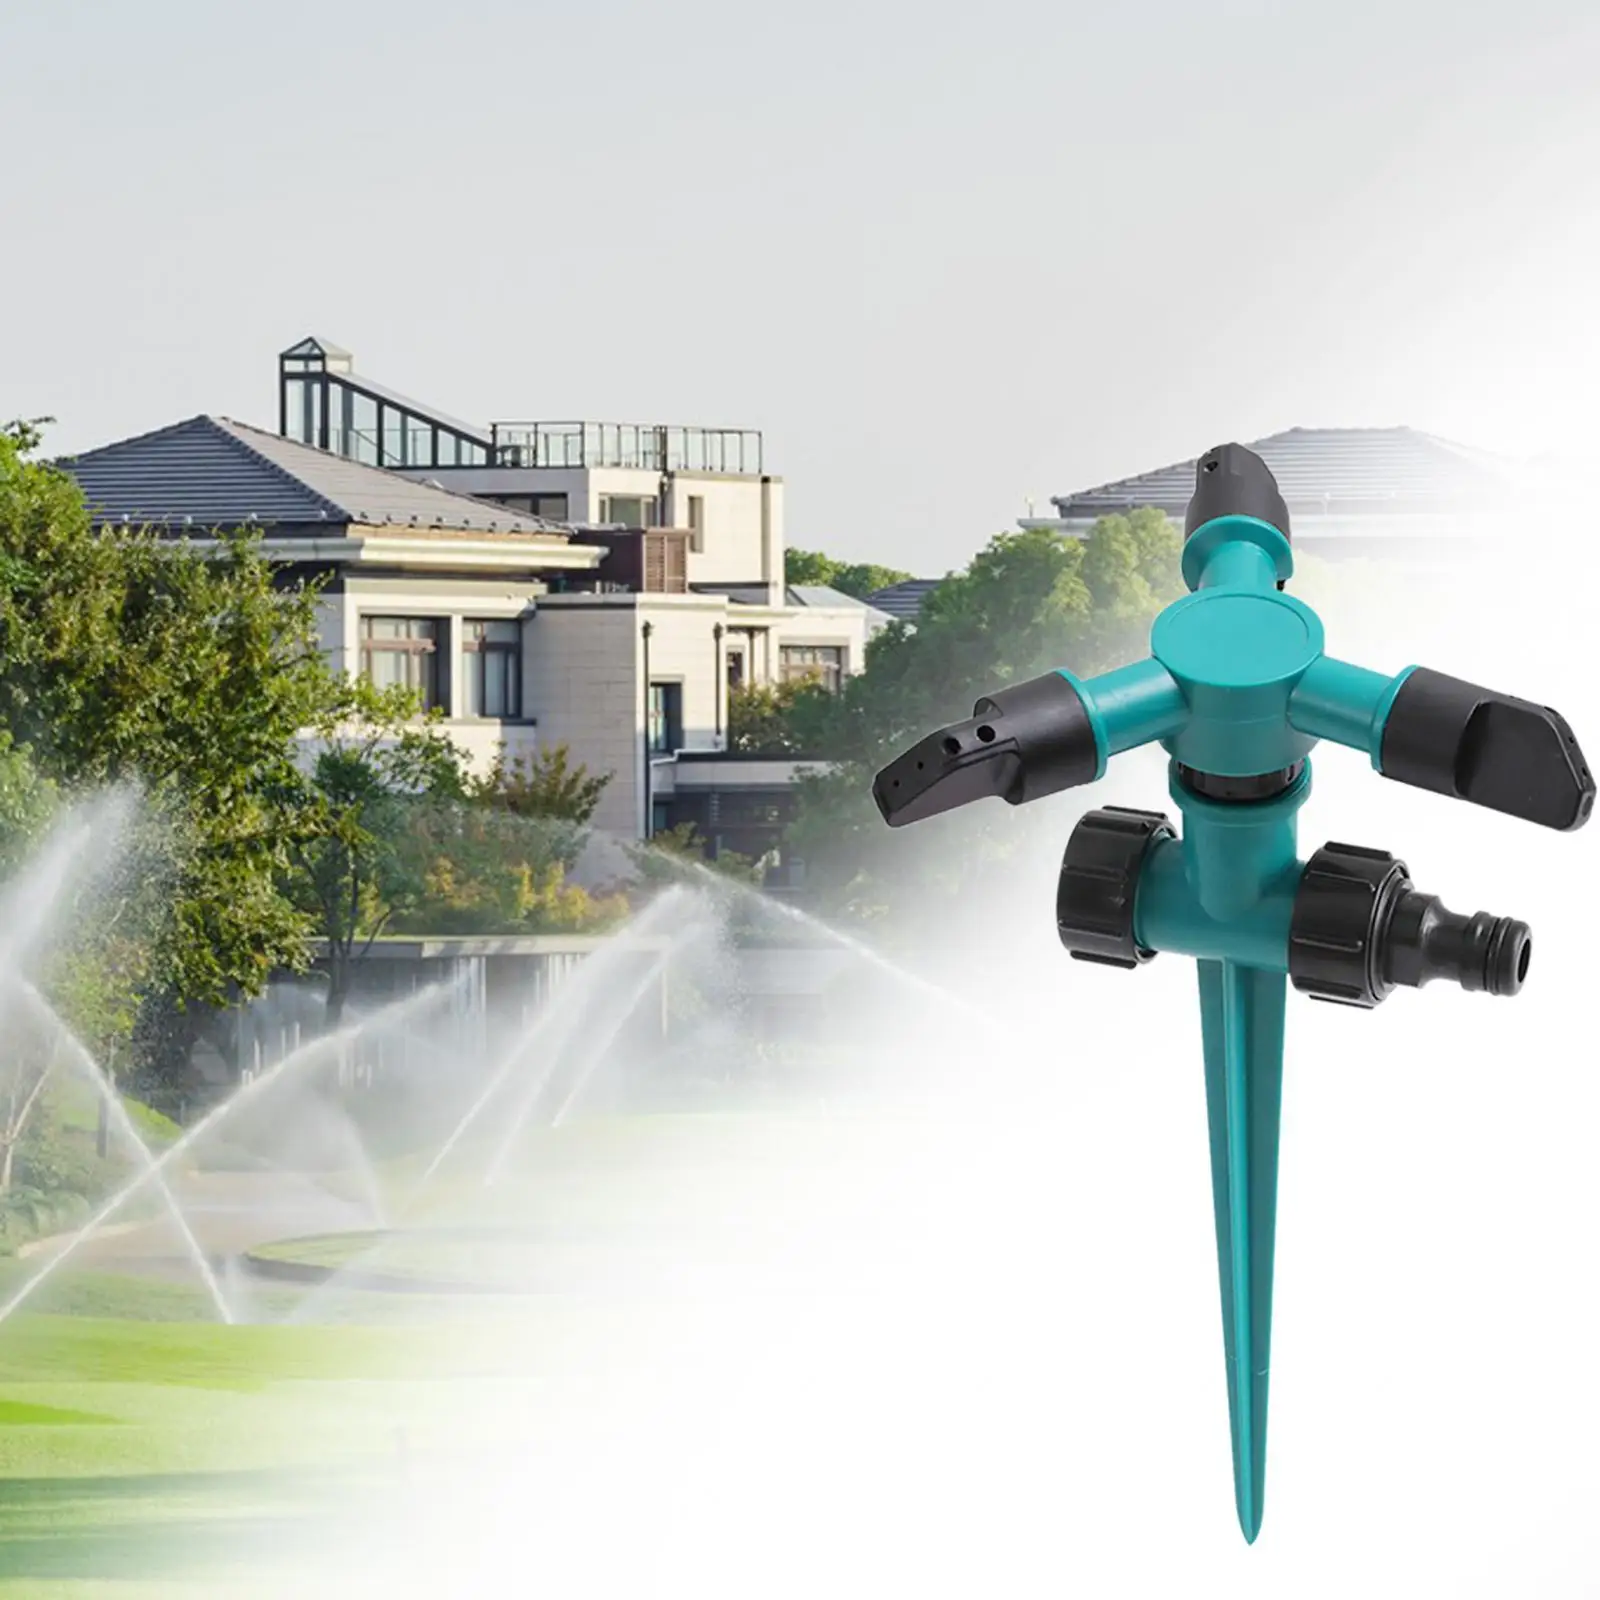 Garden Lawn Sprinkler Multifunctional Adjustable Watering Sprinklers for Garden Car Yard Household Kids Playing